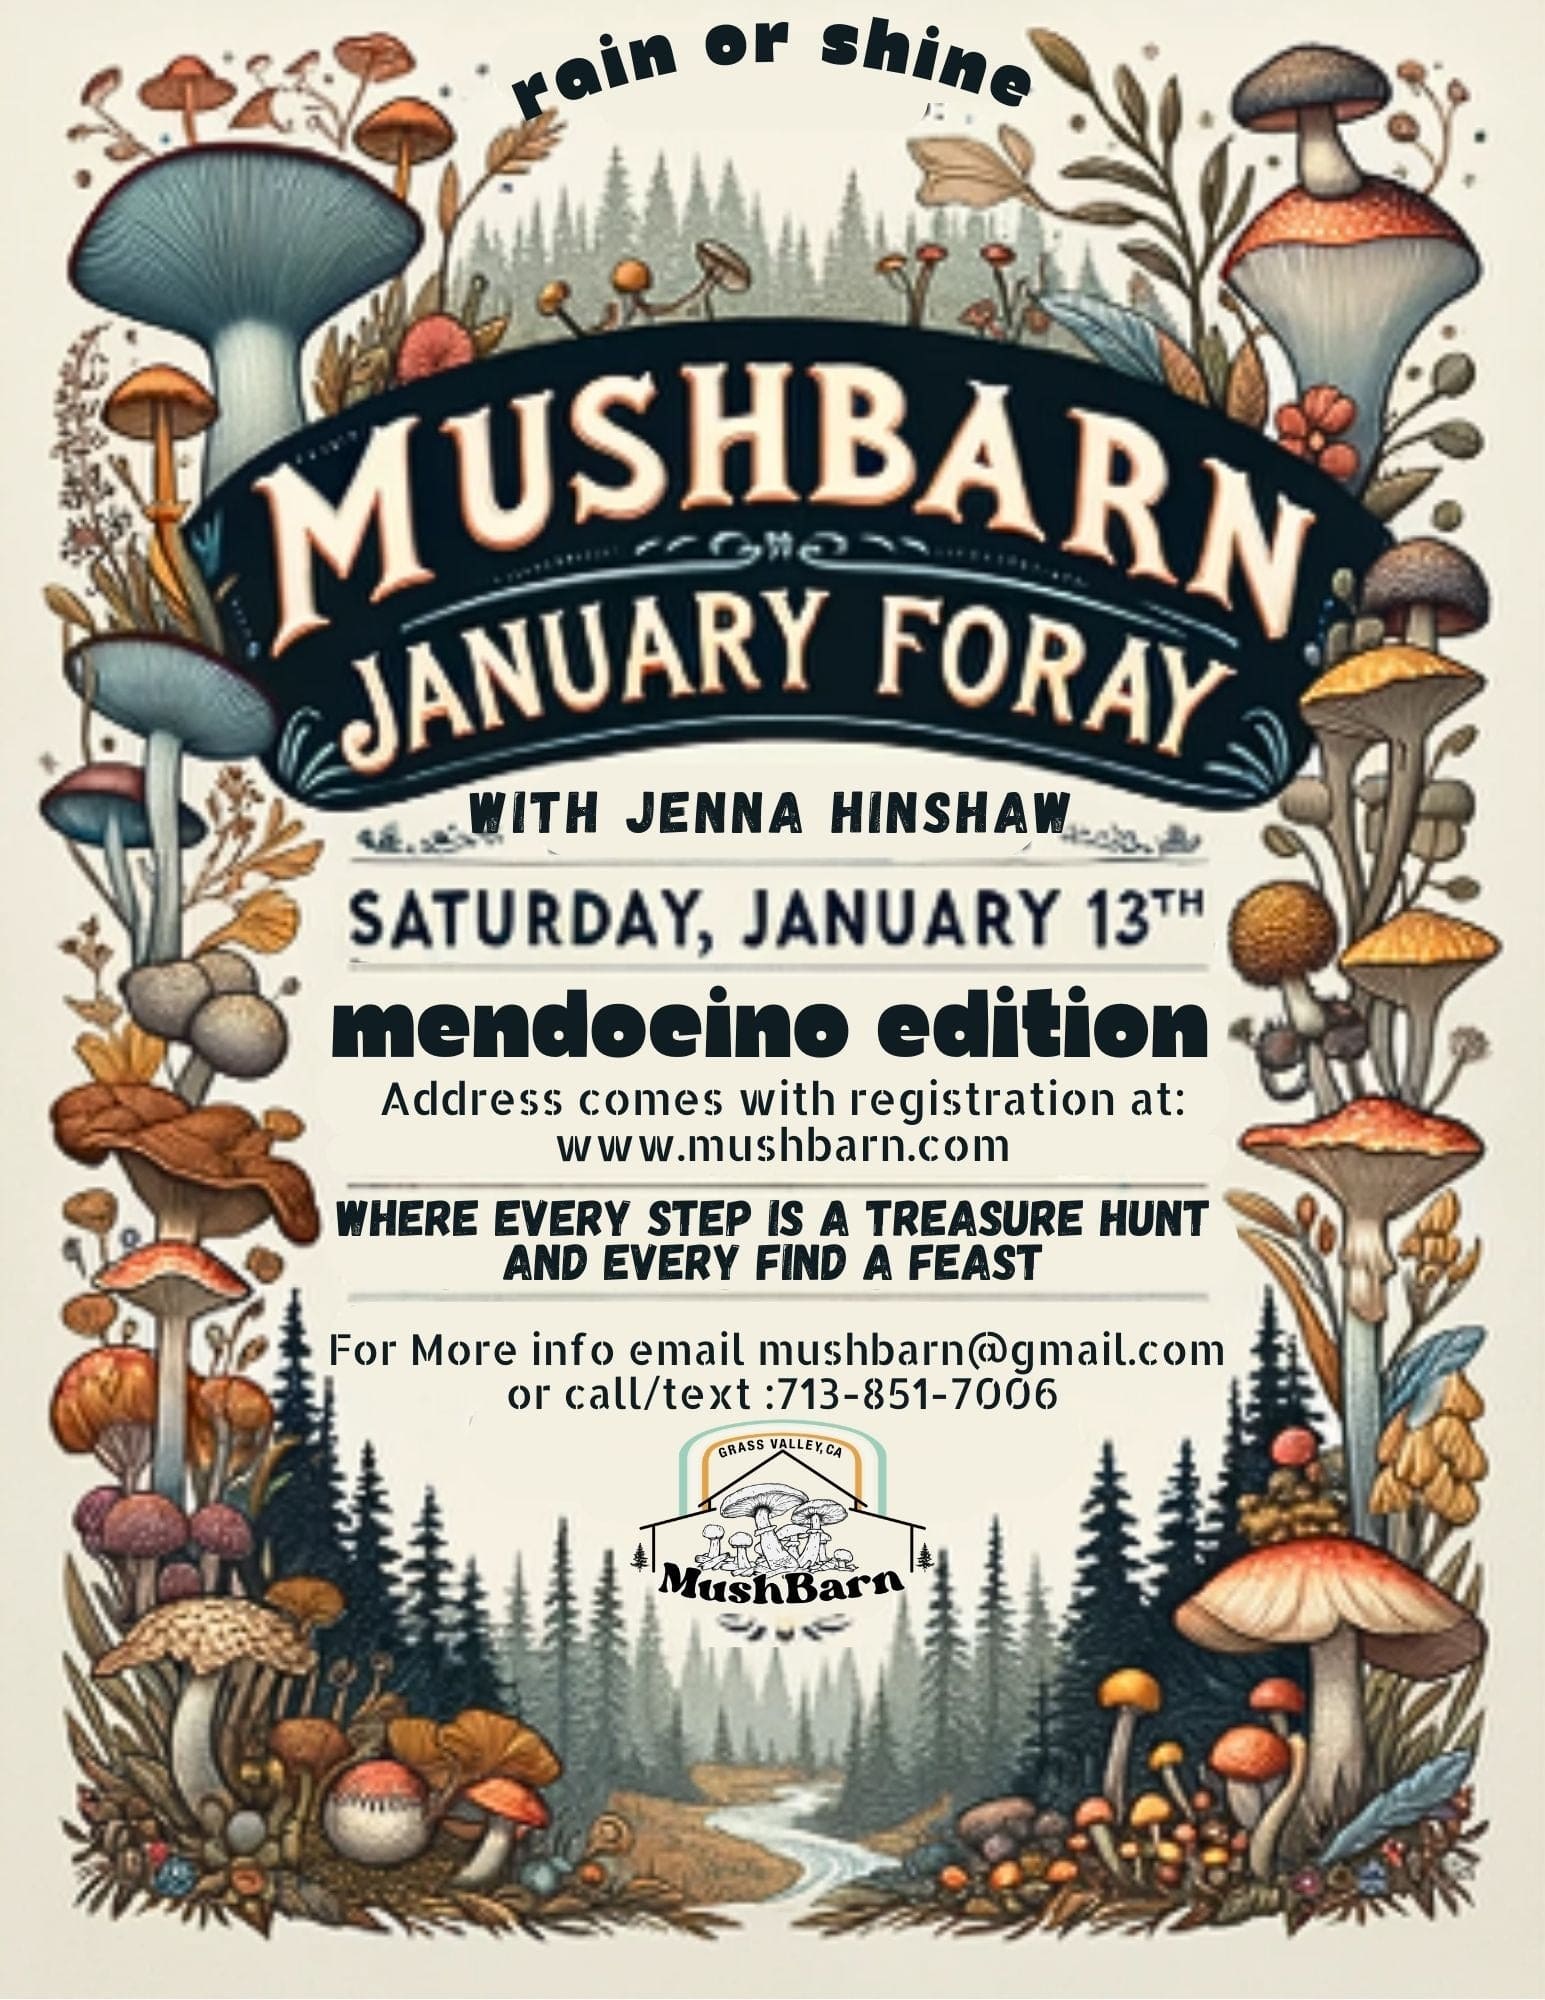 MushBarn January Foray